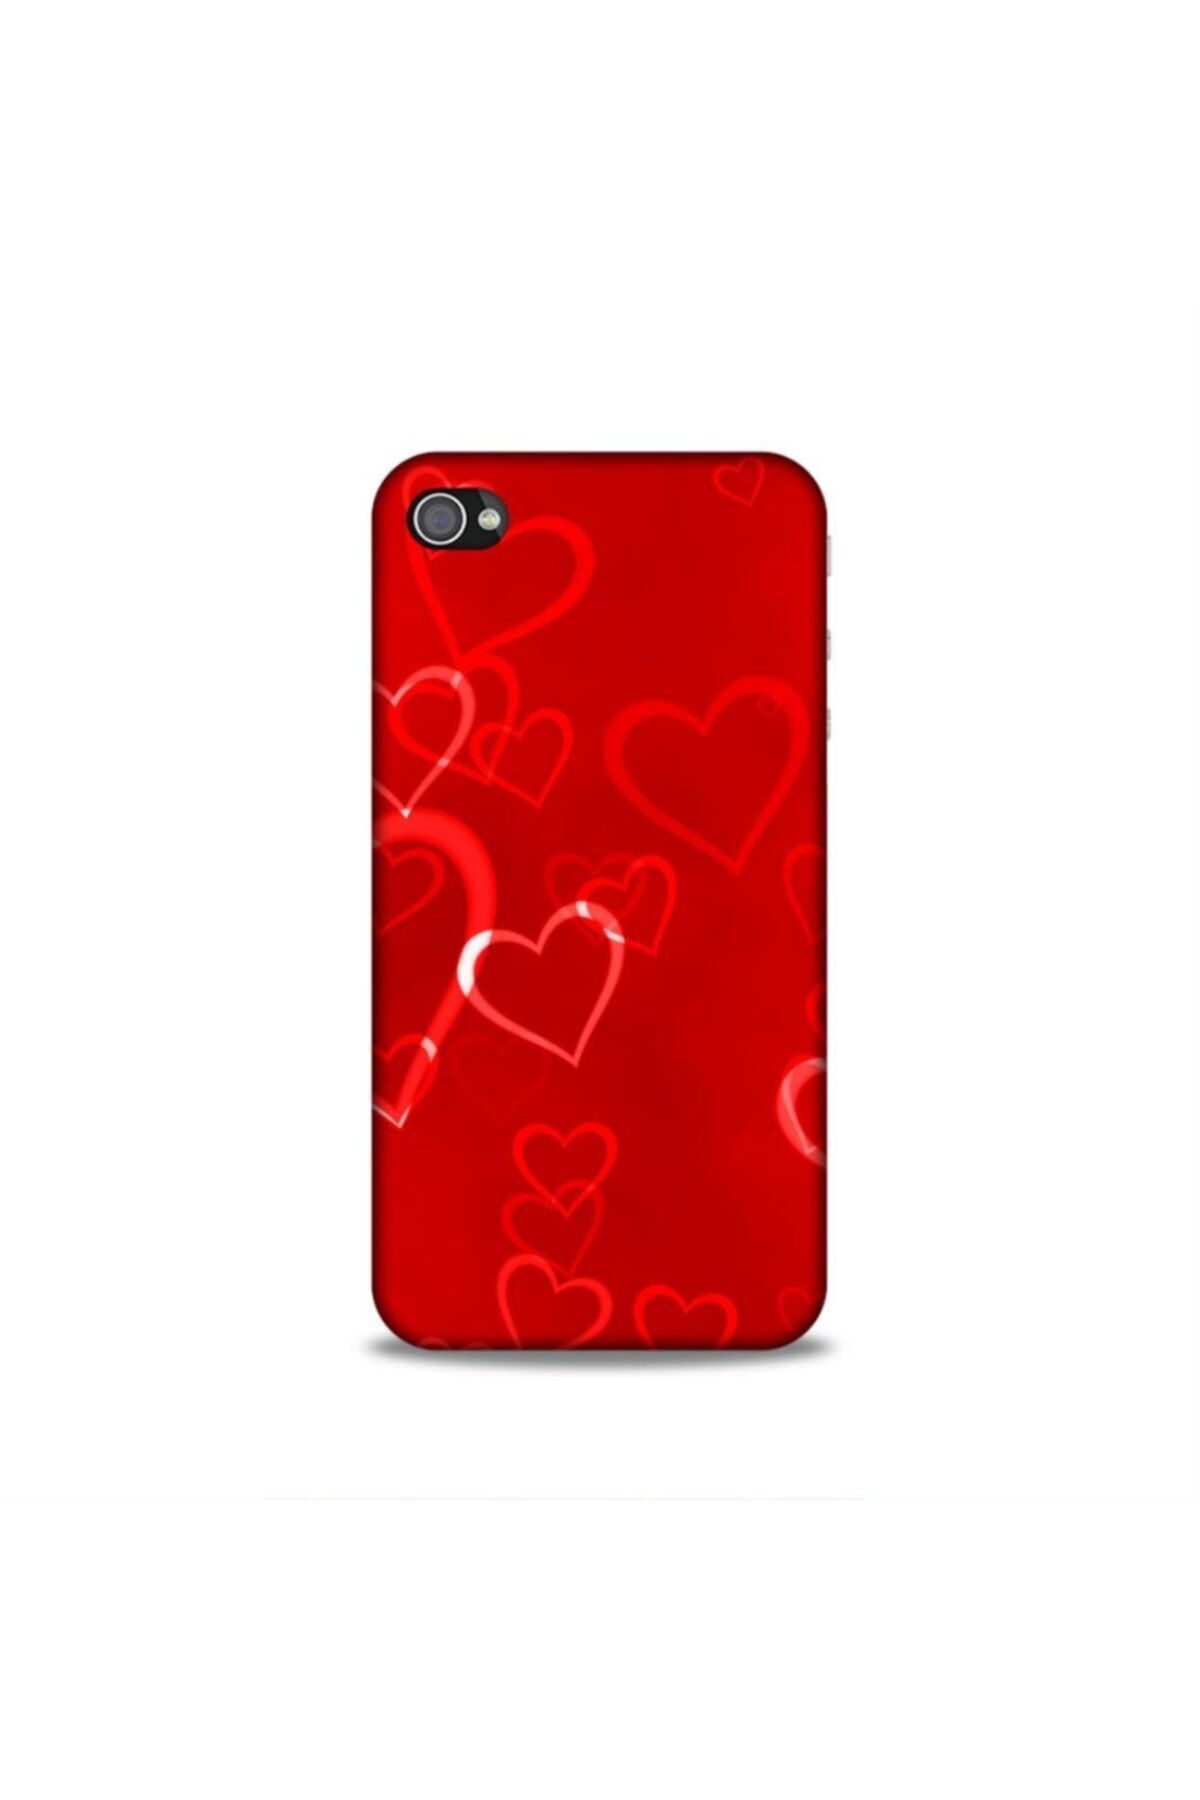 Pickcase Apple Iphone 4s Kılıf Desenli Arka Kapak Kırmızı Kalpler